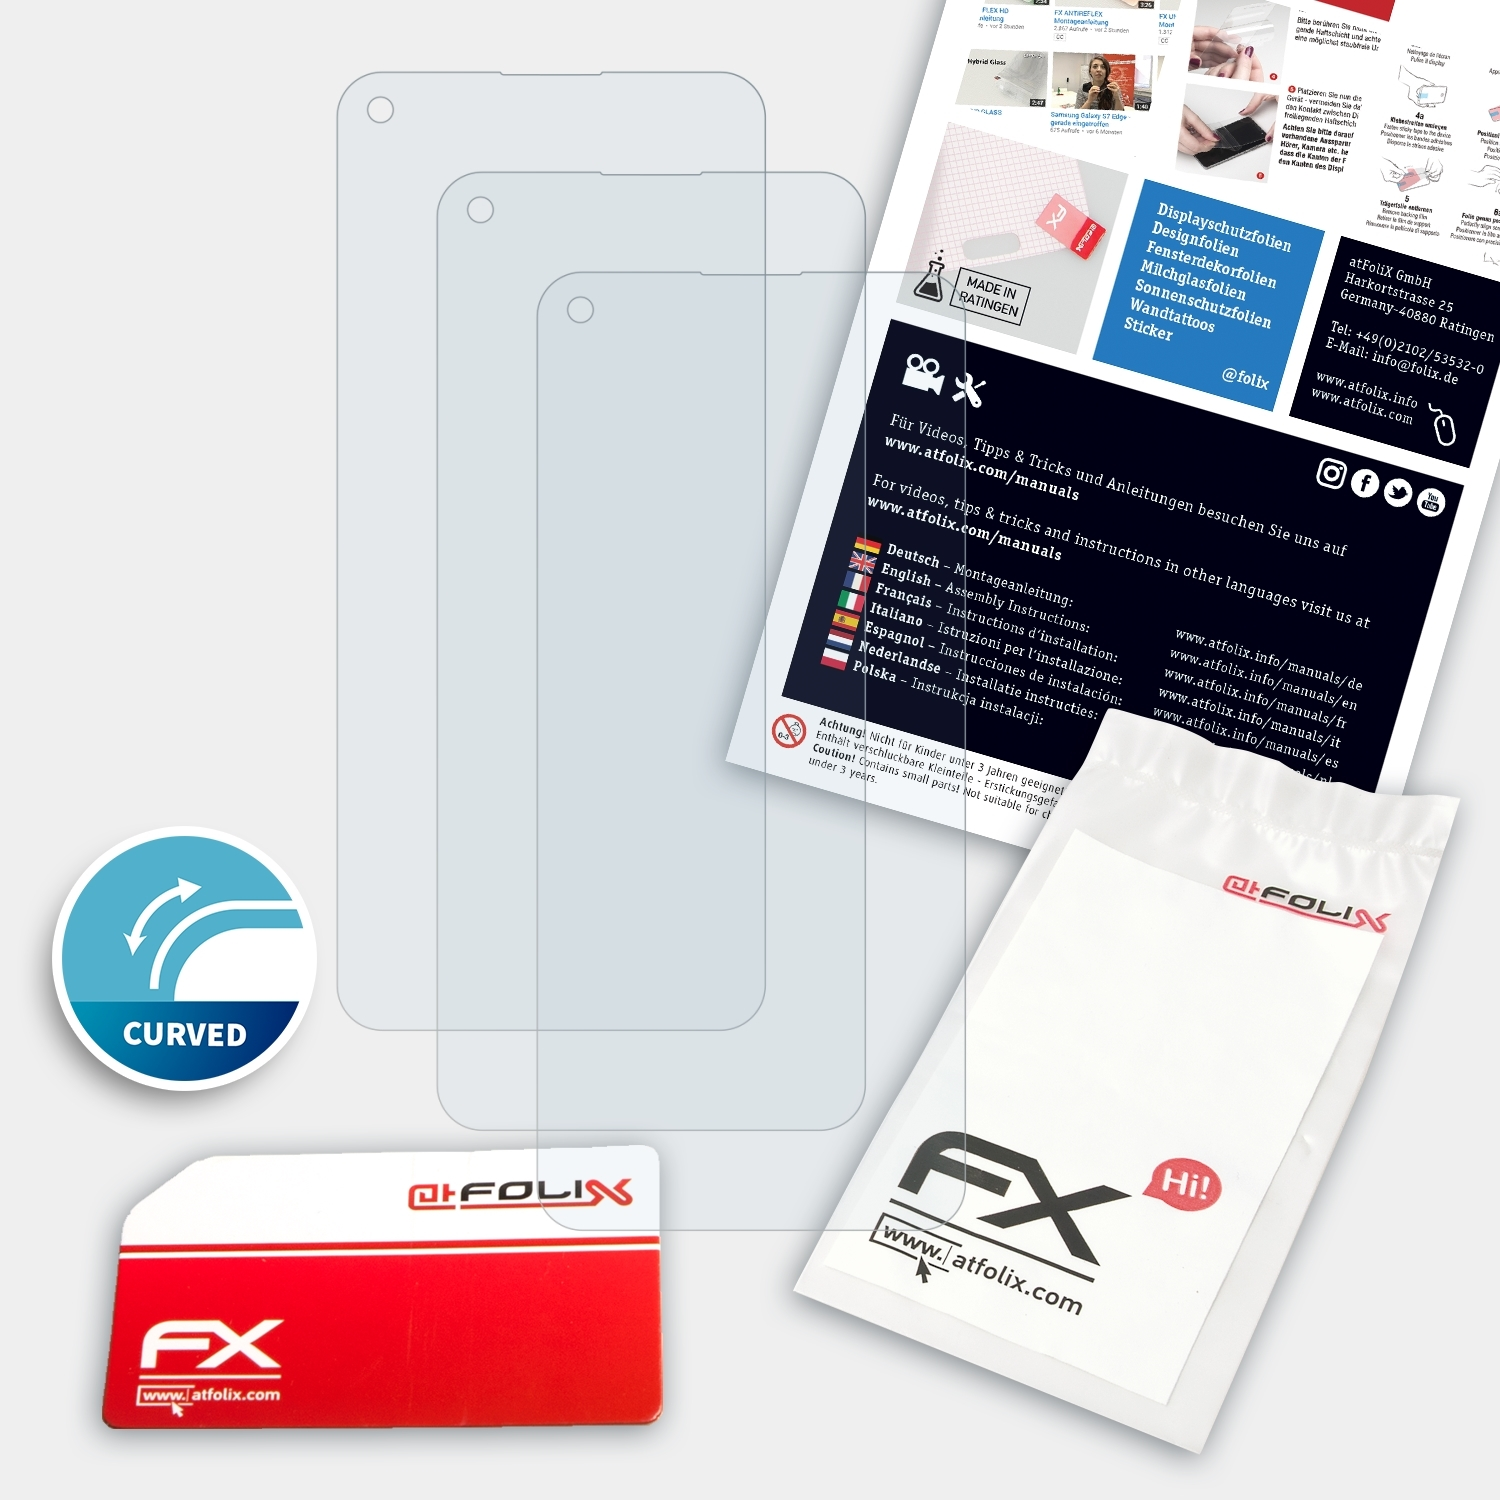 ATFOLIX FX-ActiFleX Displayschutz(für Oppo 5G) A94 3x